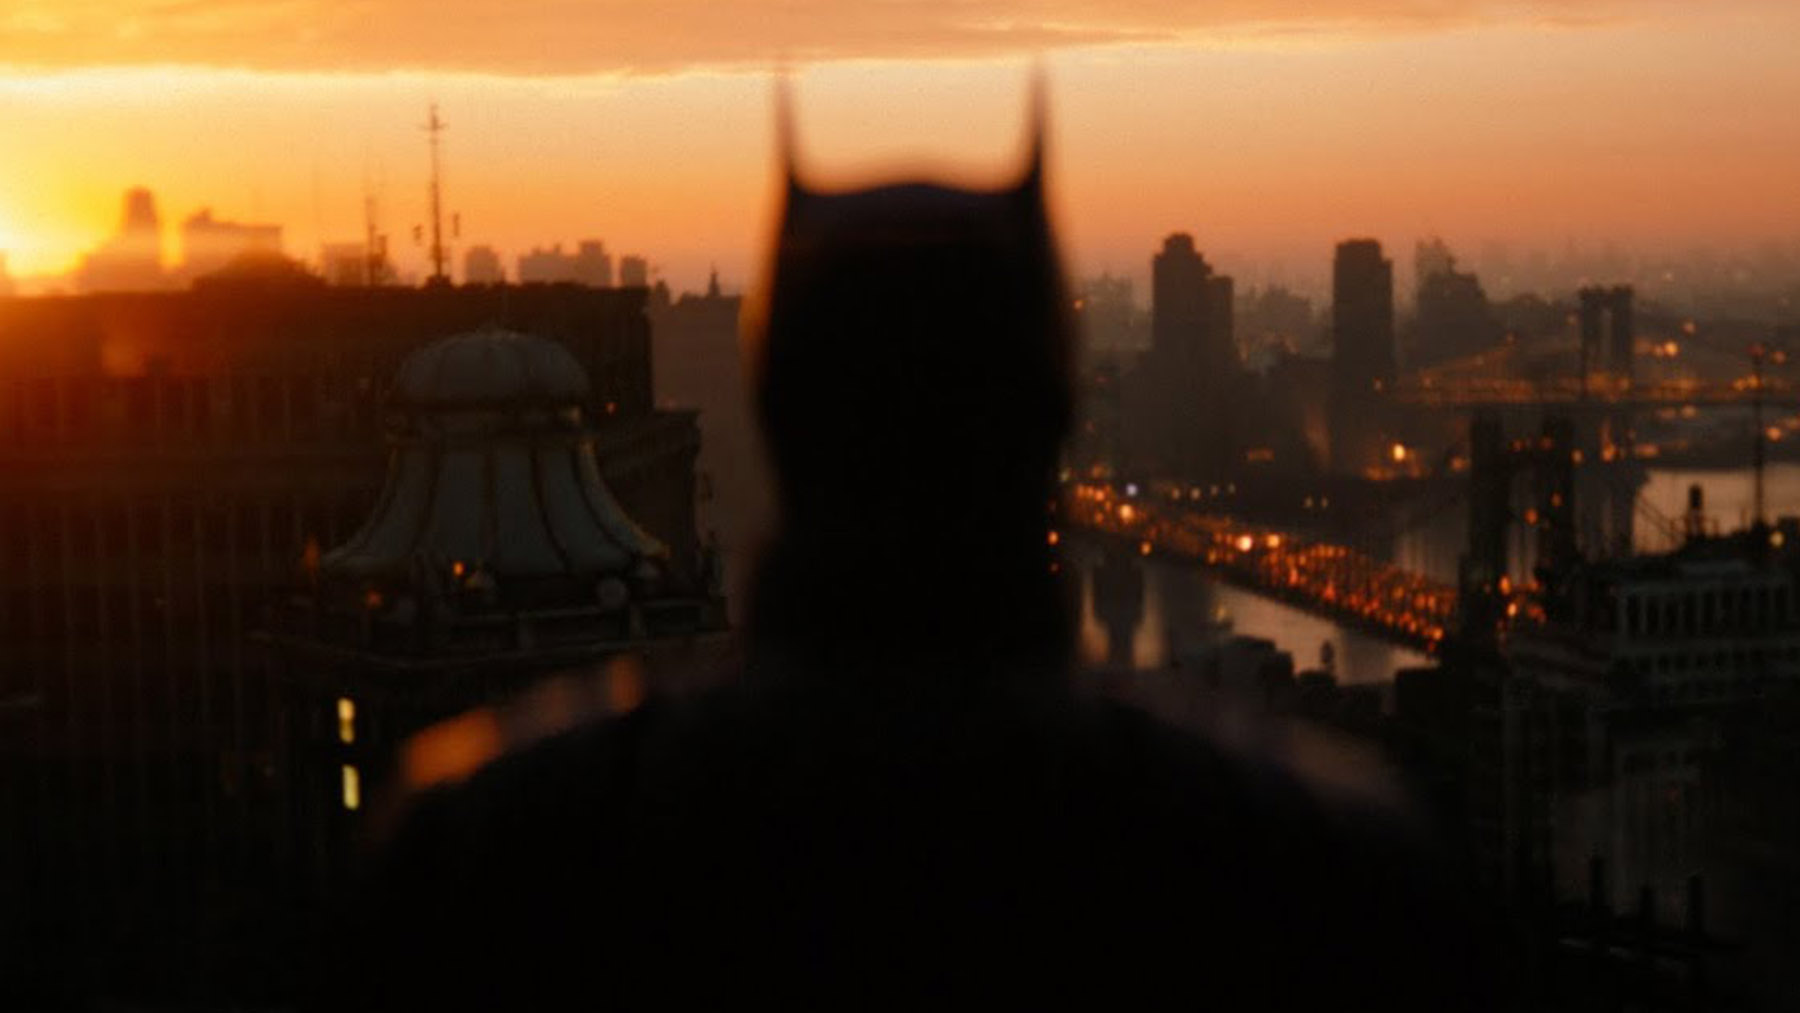 ‘The Batman’ (Warner Bros Pictures)